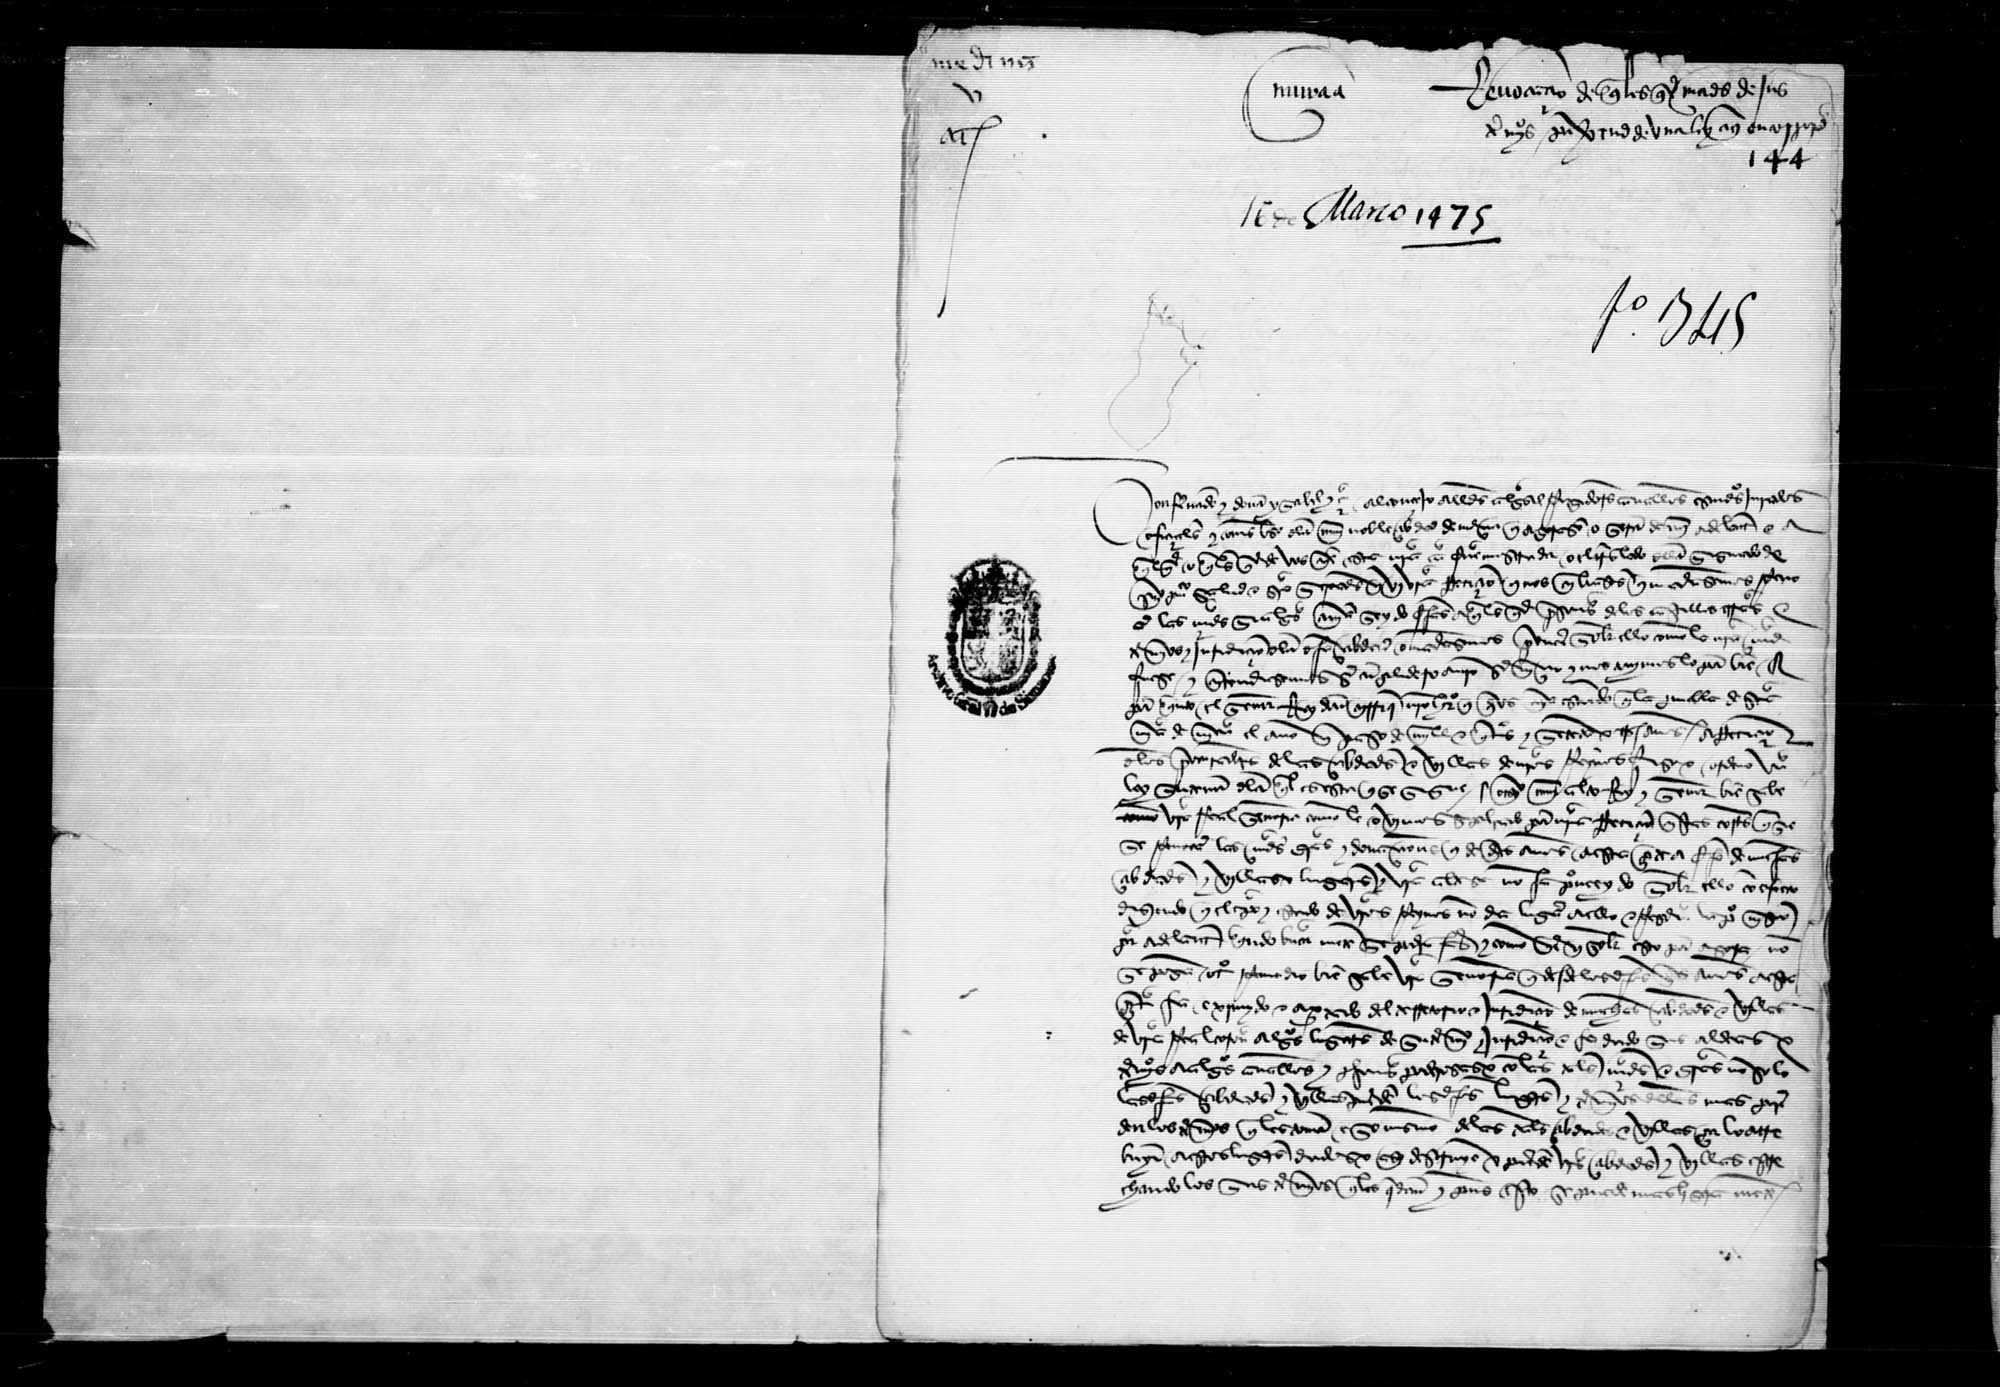 Carta al concejo y vecinos de la ciudad de Murcia para que cumplan la ley 3, que inserta, dada en las Cortes de Santa María de Nieva de 1473 por la cual se revocan todas las mercedes que se hubieran dado desde el día 15 de septiembre de 1464.